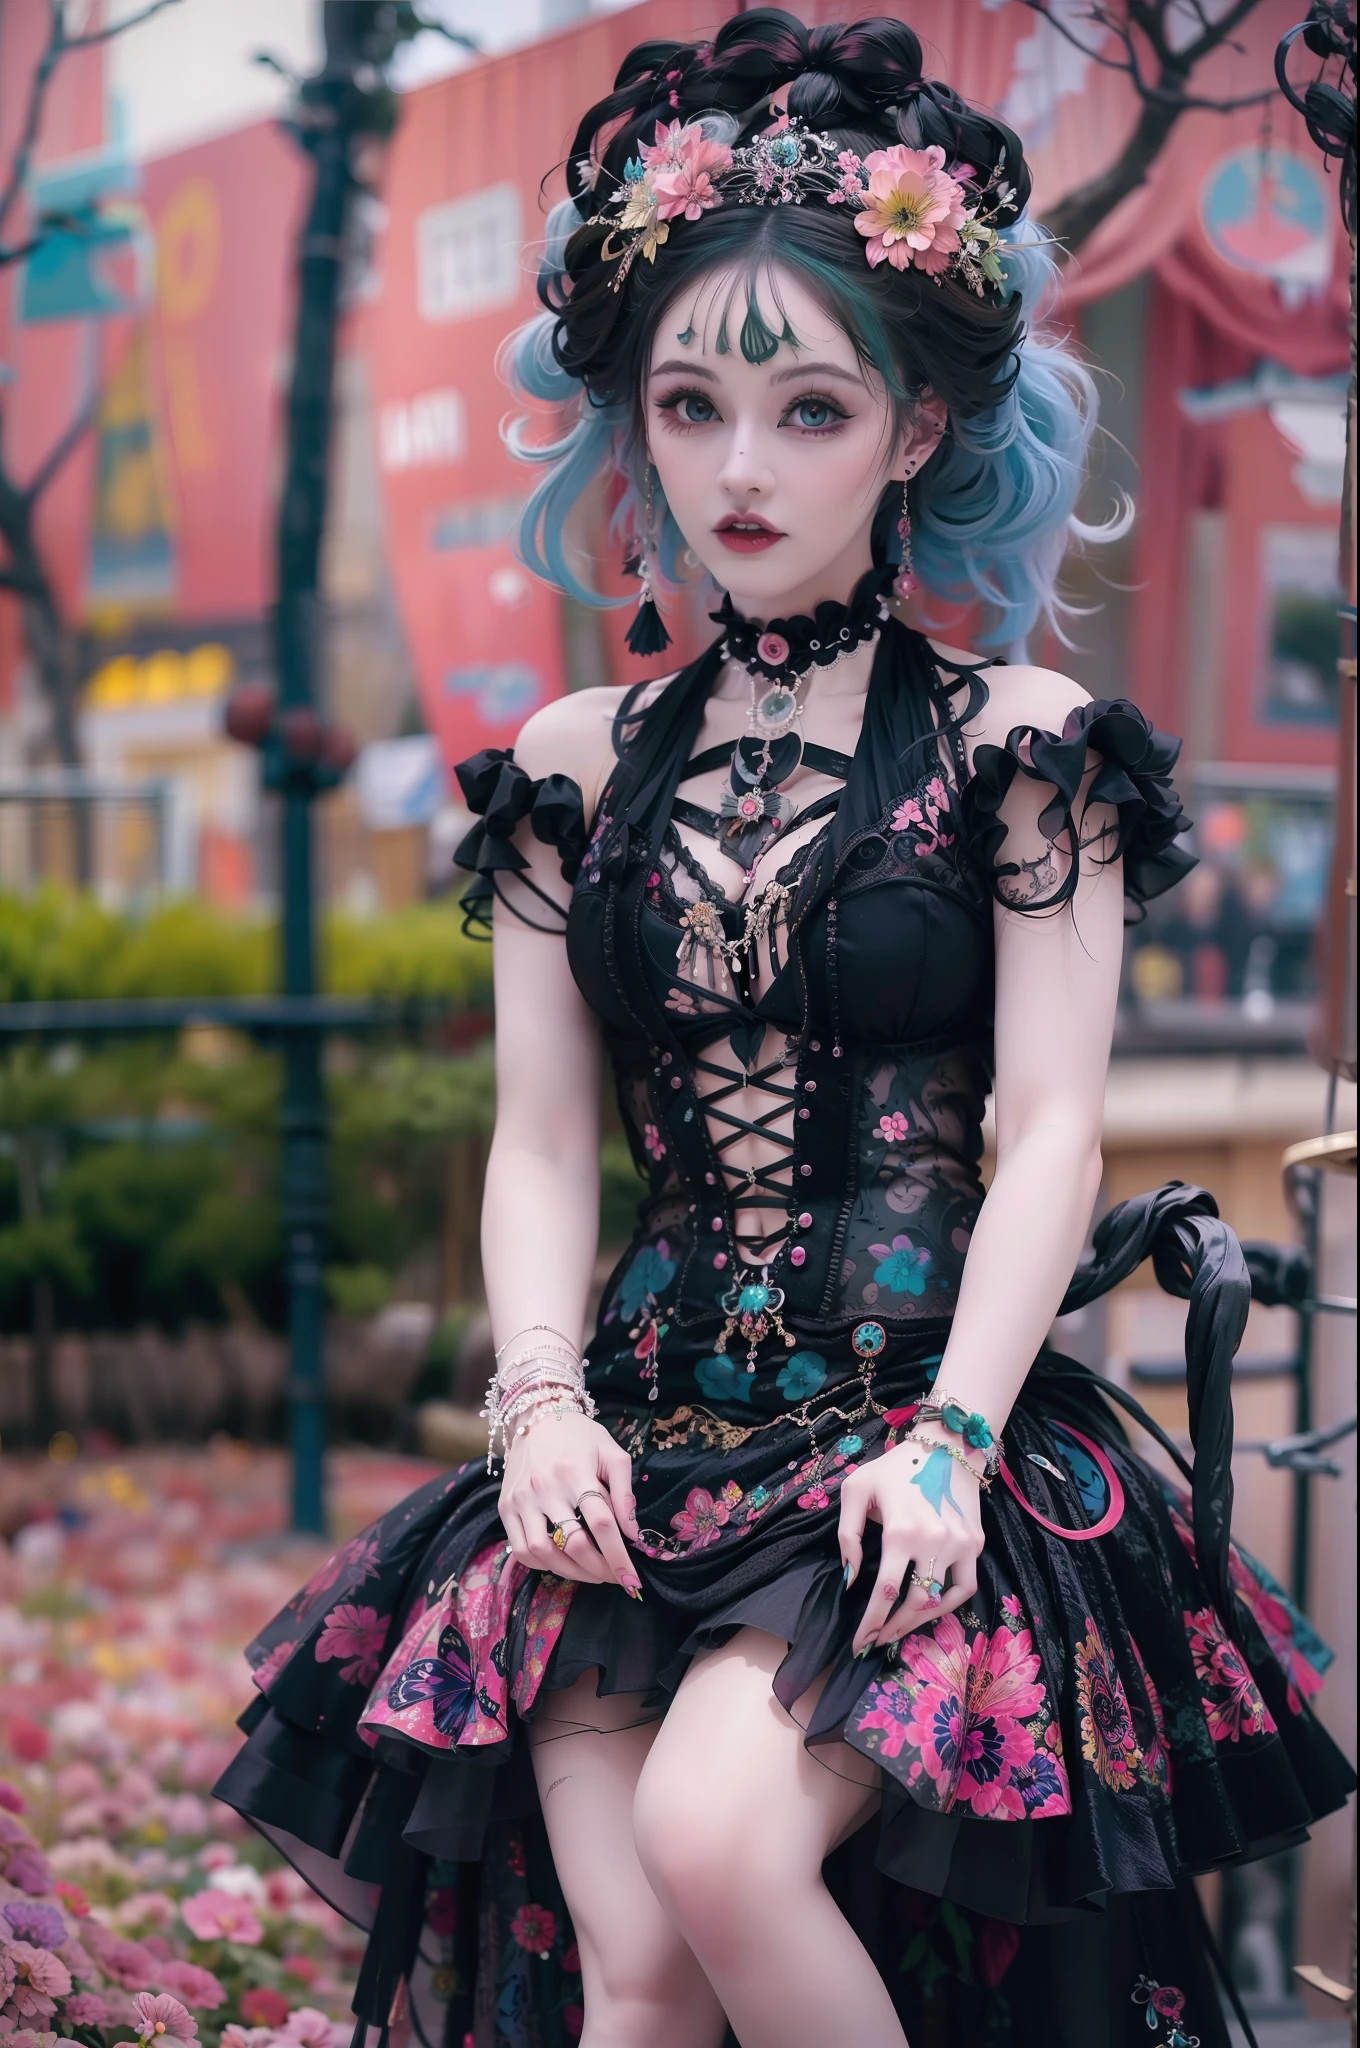 En un hermoso parque una mujer de aspecto moderno. Tiene un estilo gótico kawaii muy colorido y llamativo..., con un maquillaje elegante y una peluca colorida.